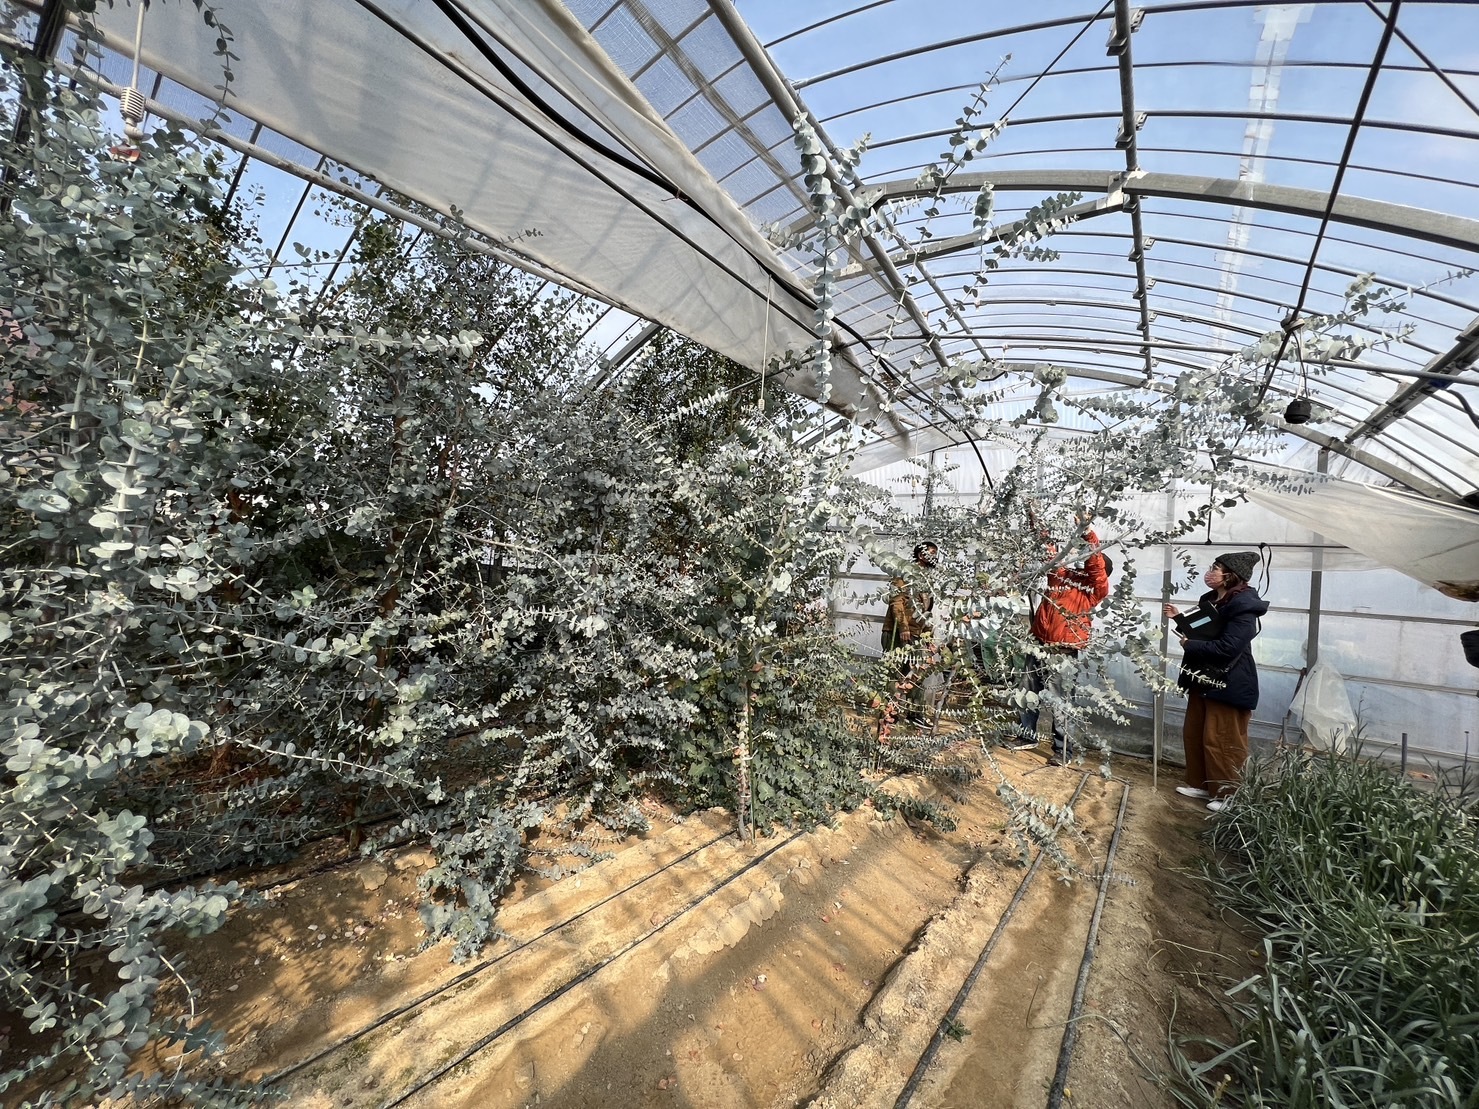 ユーカリを栽培する福津の花農家さんを見学　(写真提供:ひかりのみちDMOふくつ)